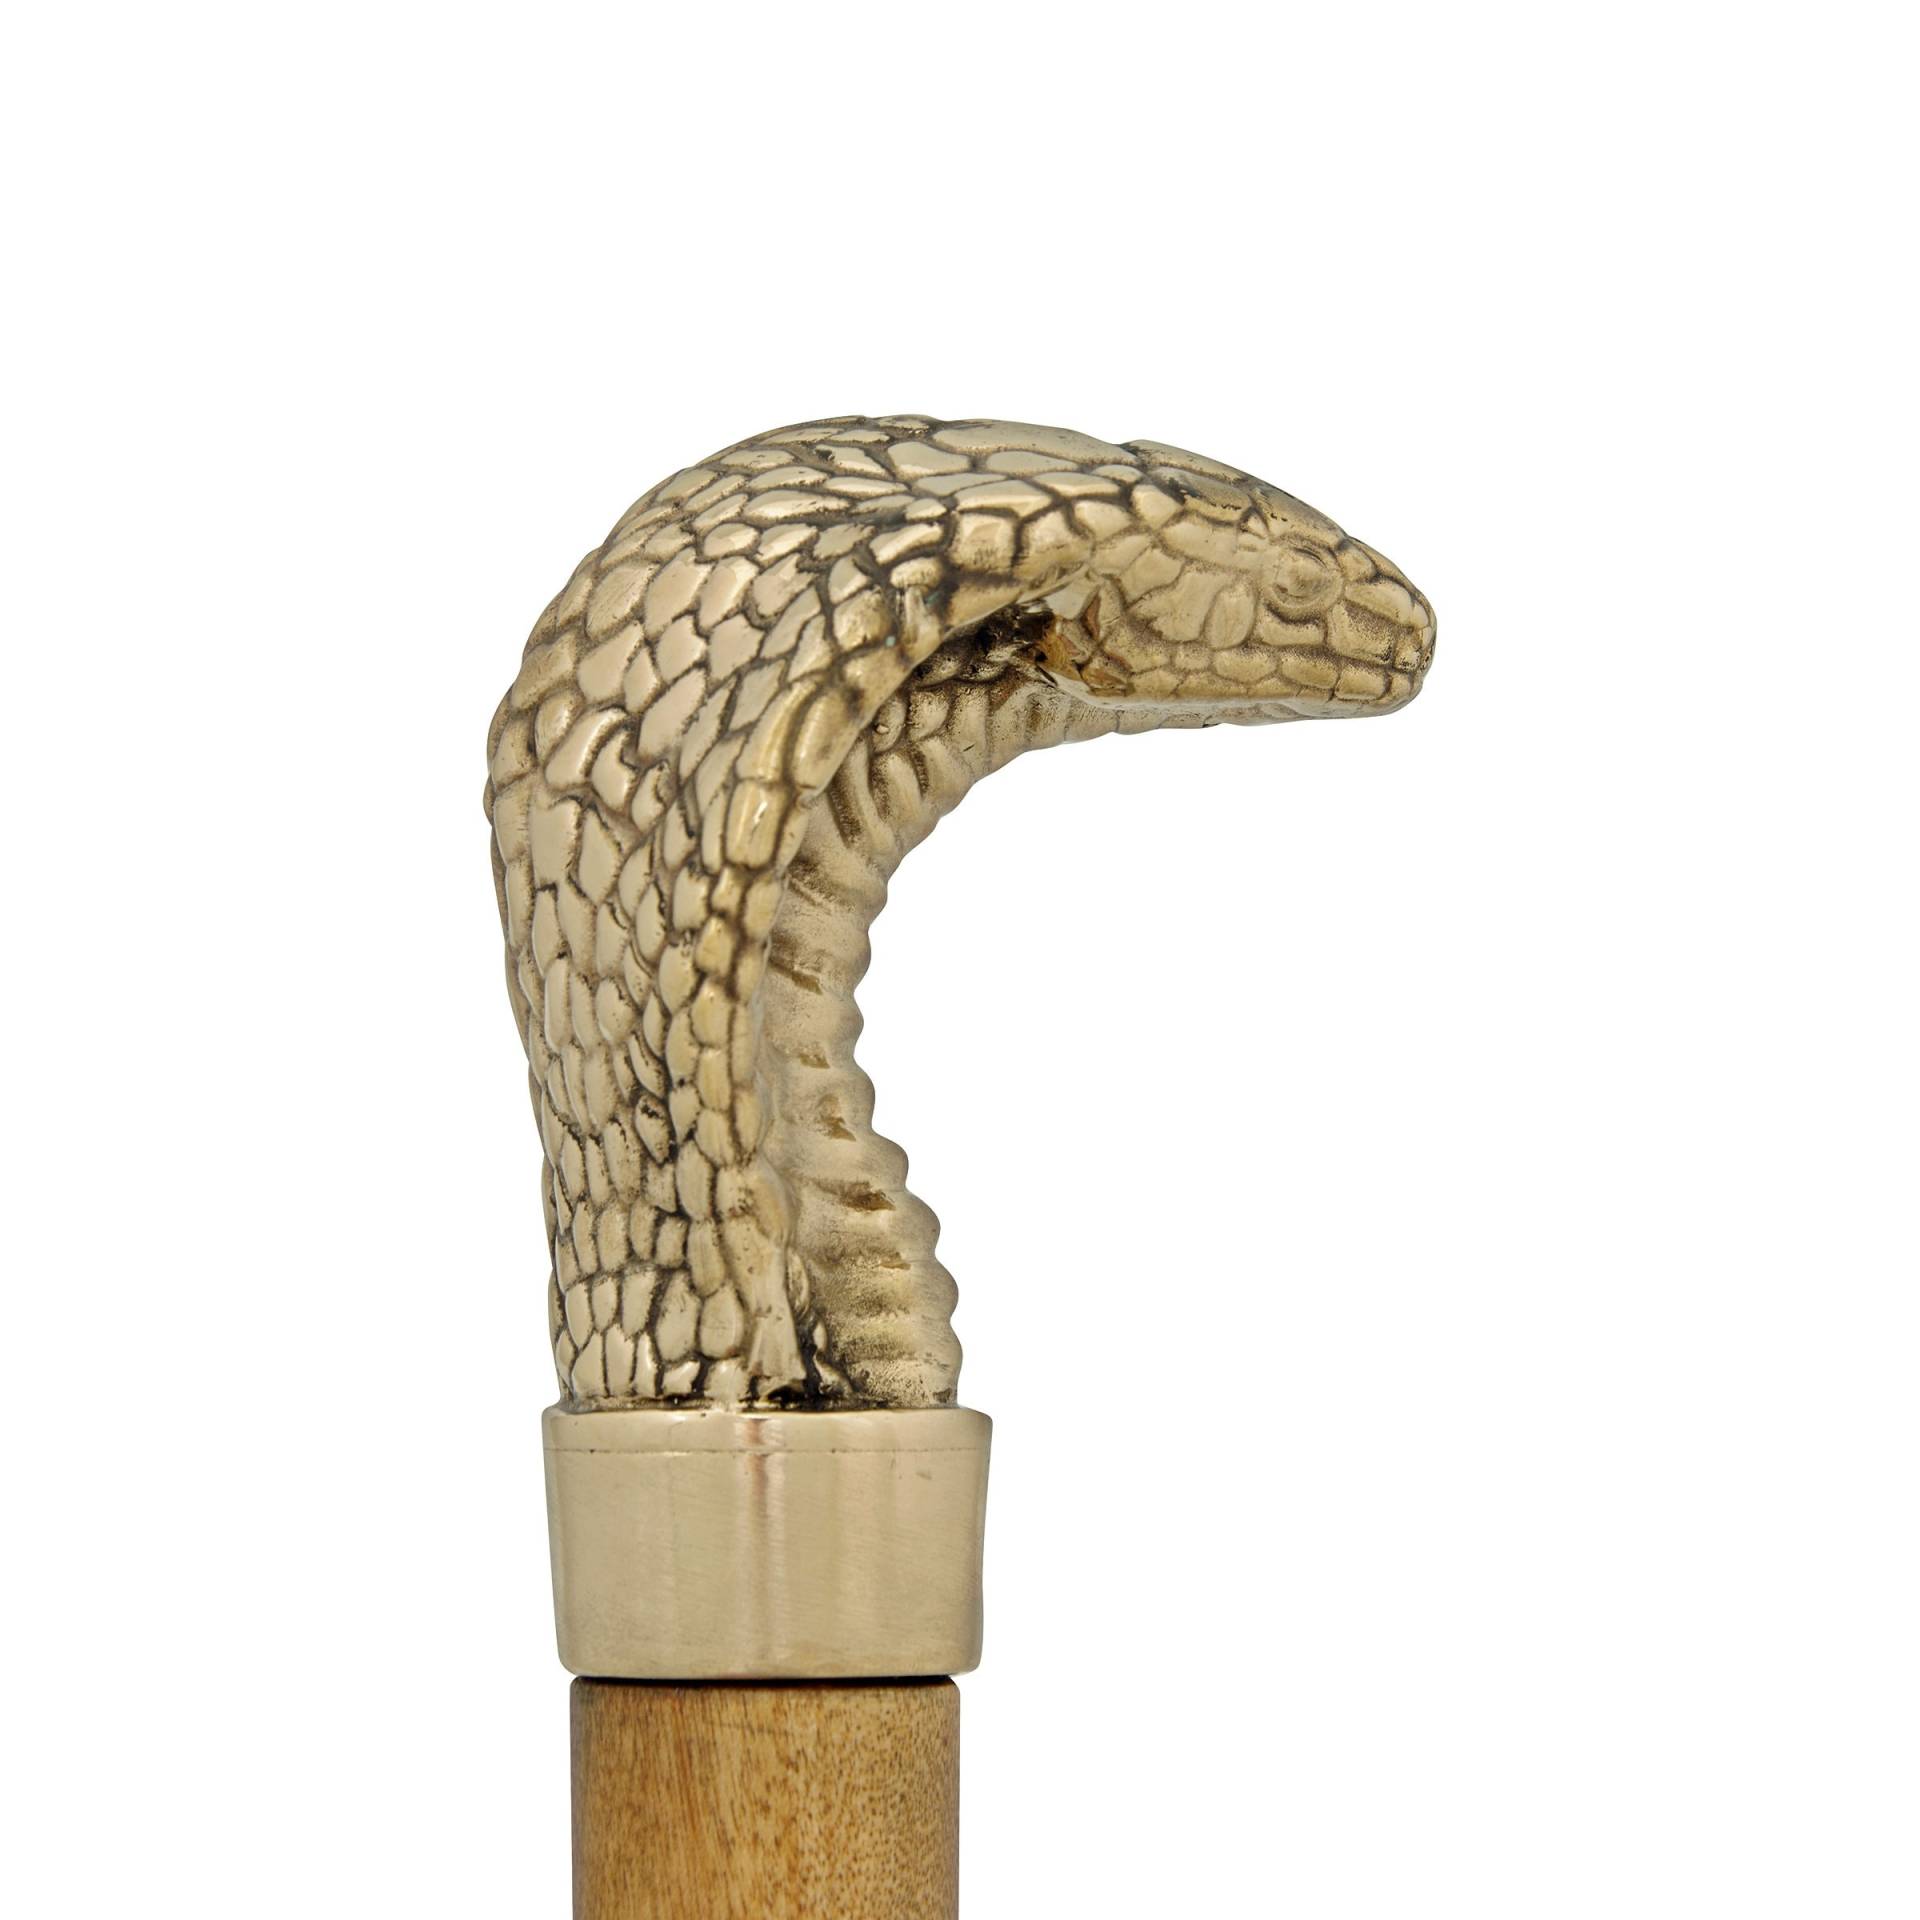 Gehstock Und "Cobra" Aus Messing, Holz von artbrassforyou